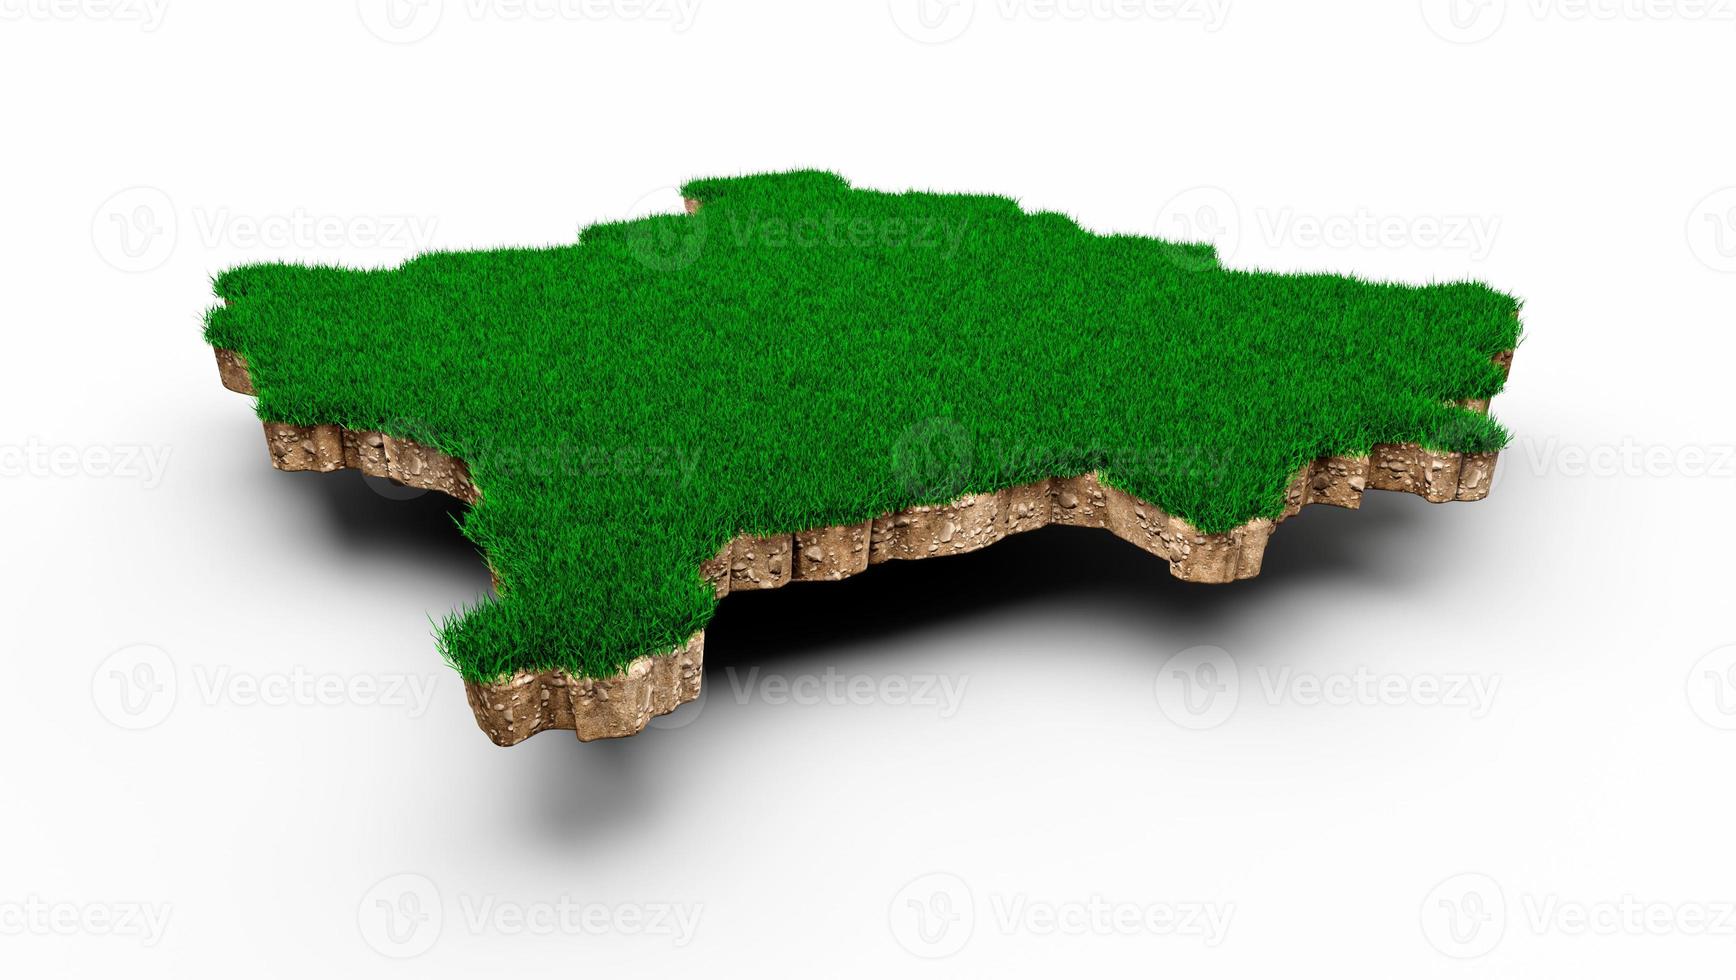 kosovo karta jord mark geologi tvärsnitt med grönt gräs och sten marken textur 3d illustration foto